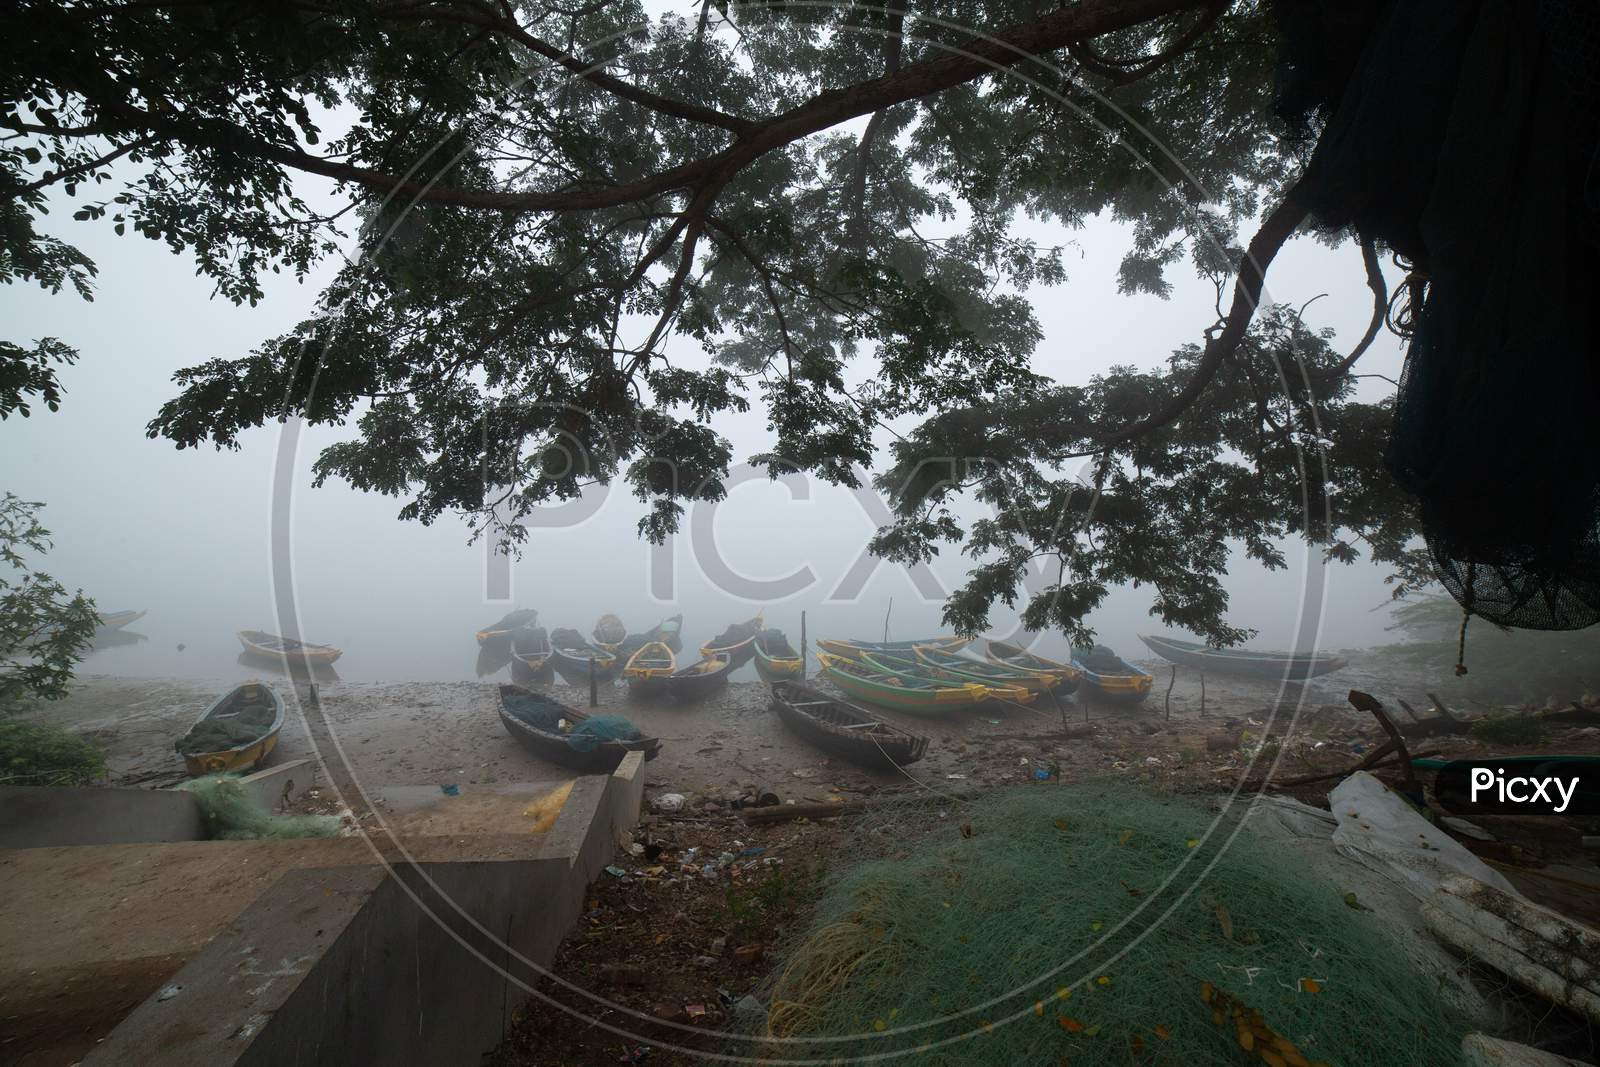 Landscape of wooden boats during fog